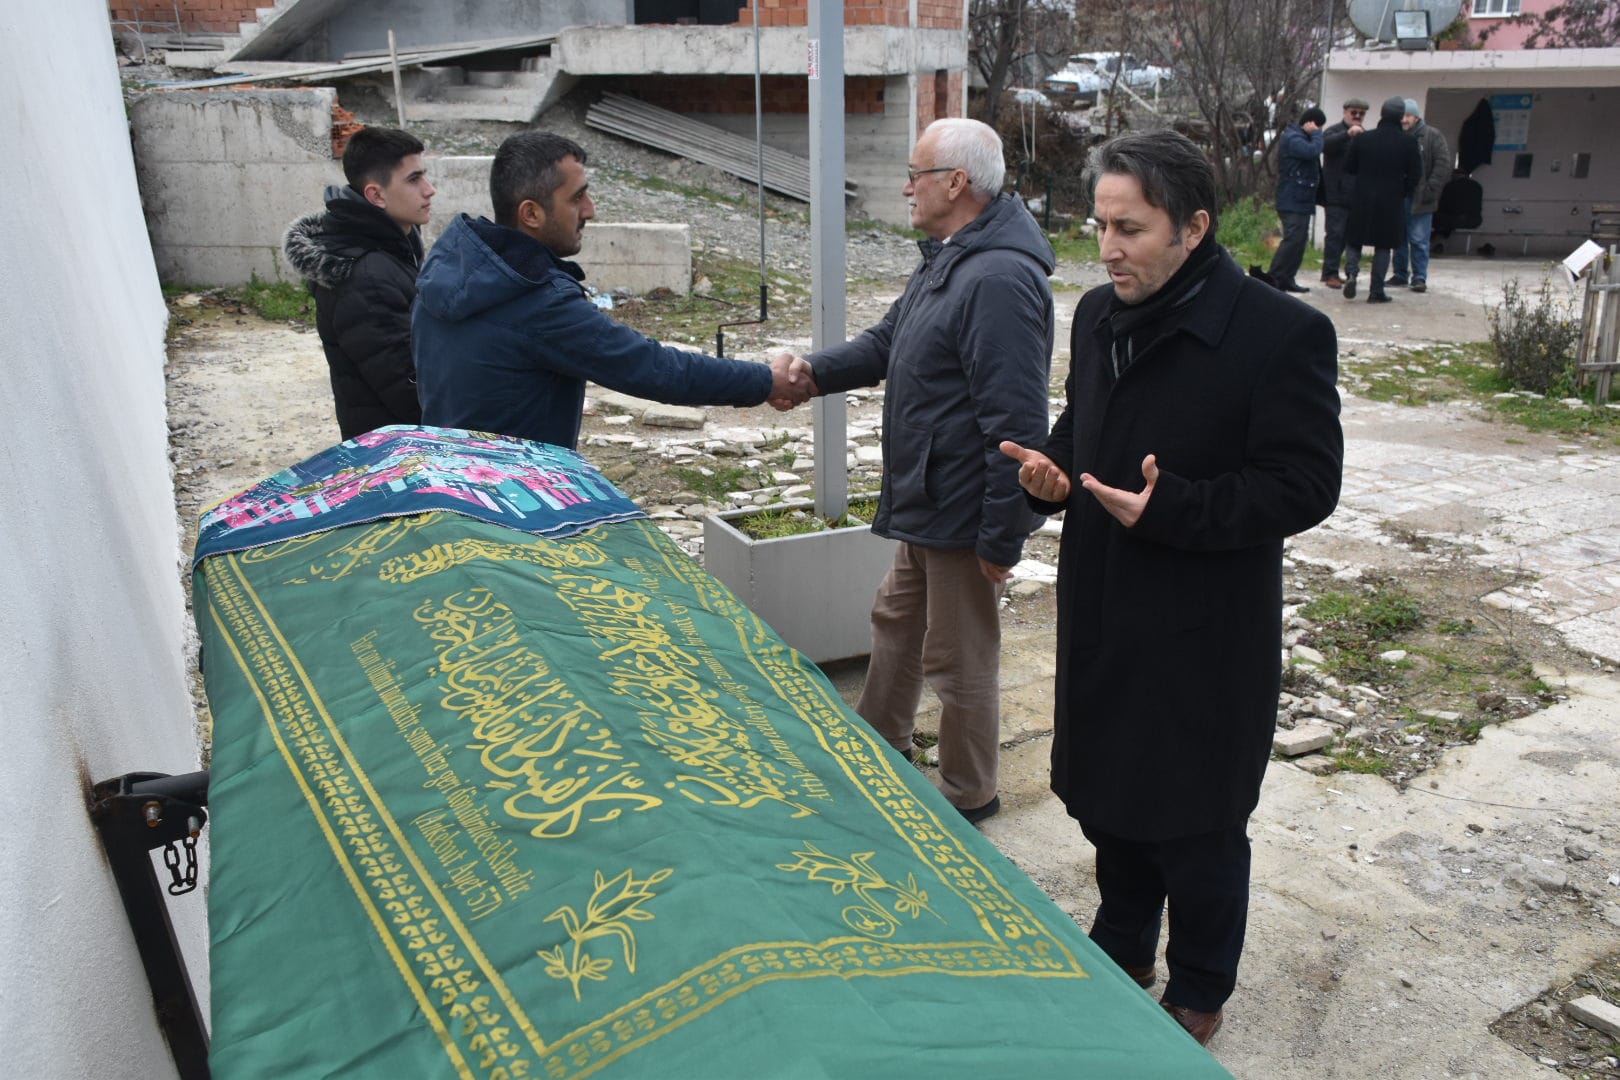 Belediye Başkanımız Hüseyin Kıyma ilçemiz Kozköy mahallesi halkından vefat eden Gülfidan Baş’ın cenaze namazına katıldı, ailesine baş sağlığında bulundu.